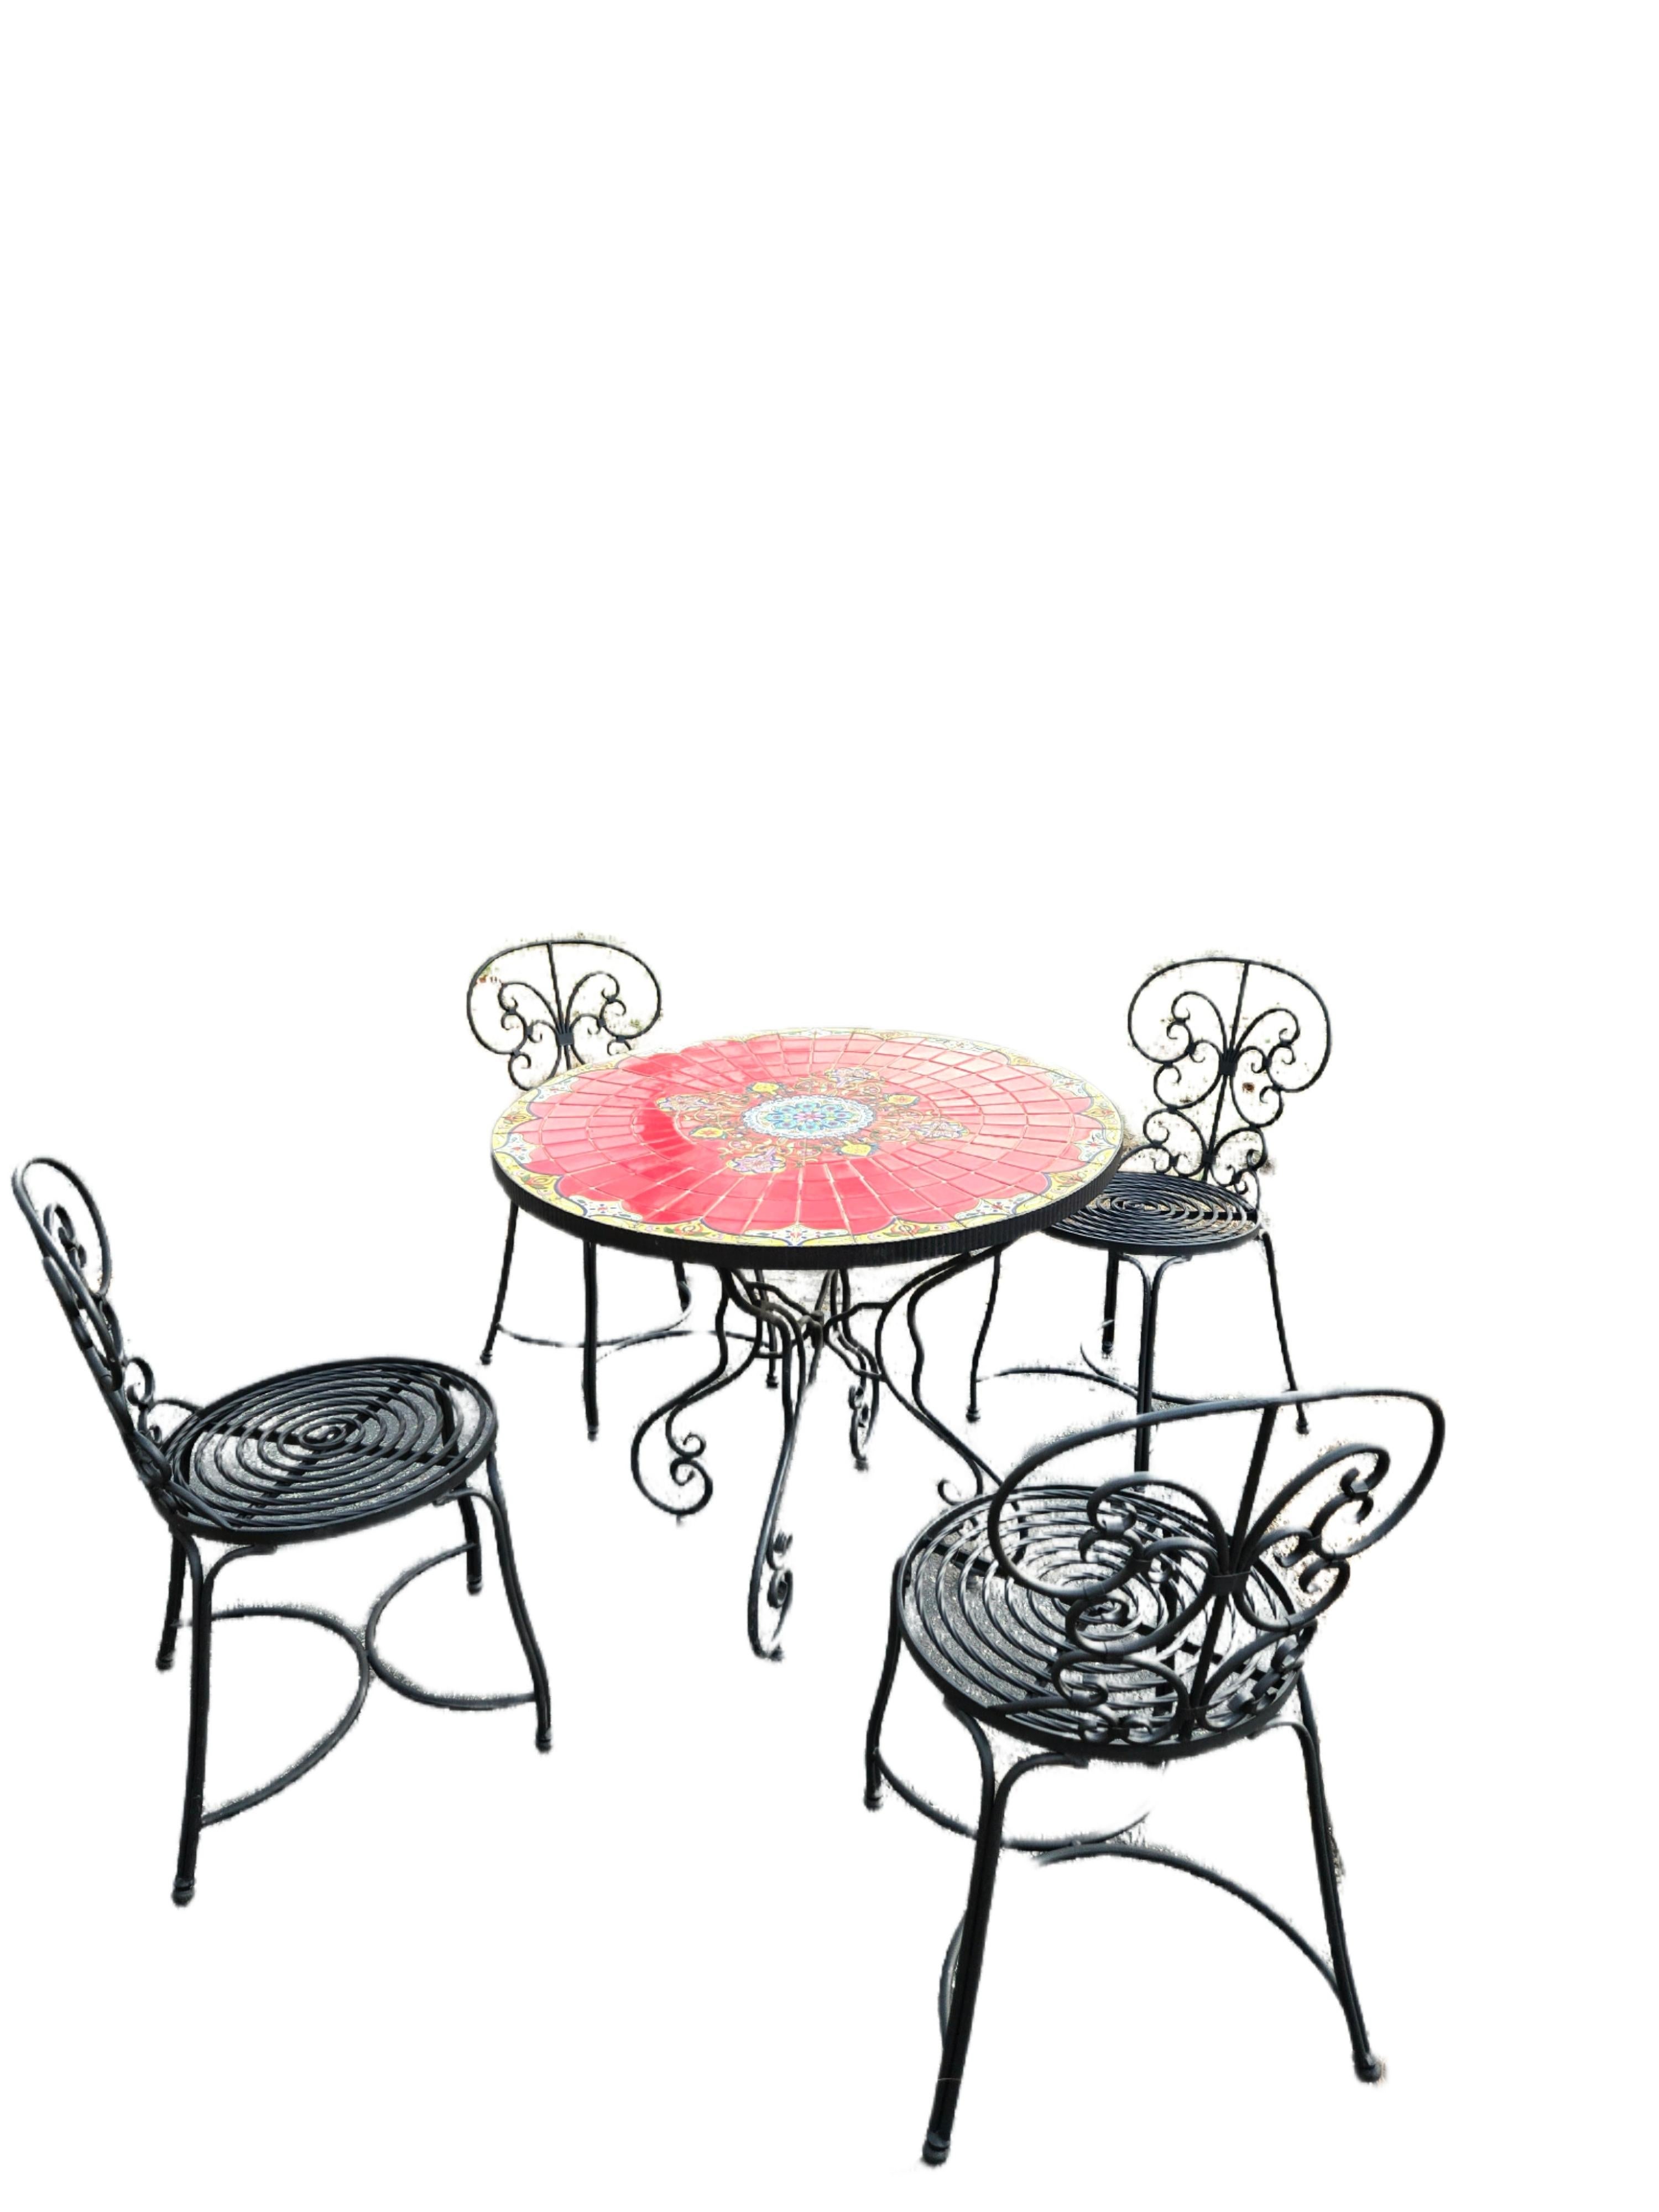 Vintage Morracan Keramikfliese Tisch und 4 Stühle jetzt verfügbar und bereit zu versenden.

Dieses erstaunliche Arrangement aus 4 schmiedeeisernen Bistrostühlen mit geschwungener Rückenlehne und einem Tisch aus Kermaikfliesen ist perfekt für jede